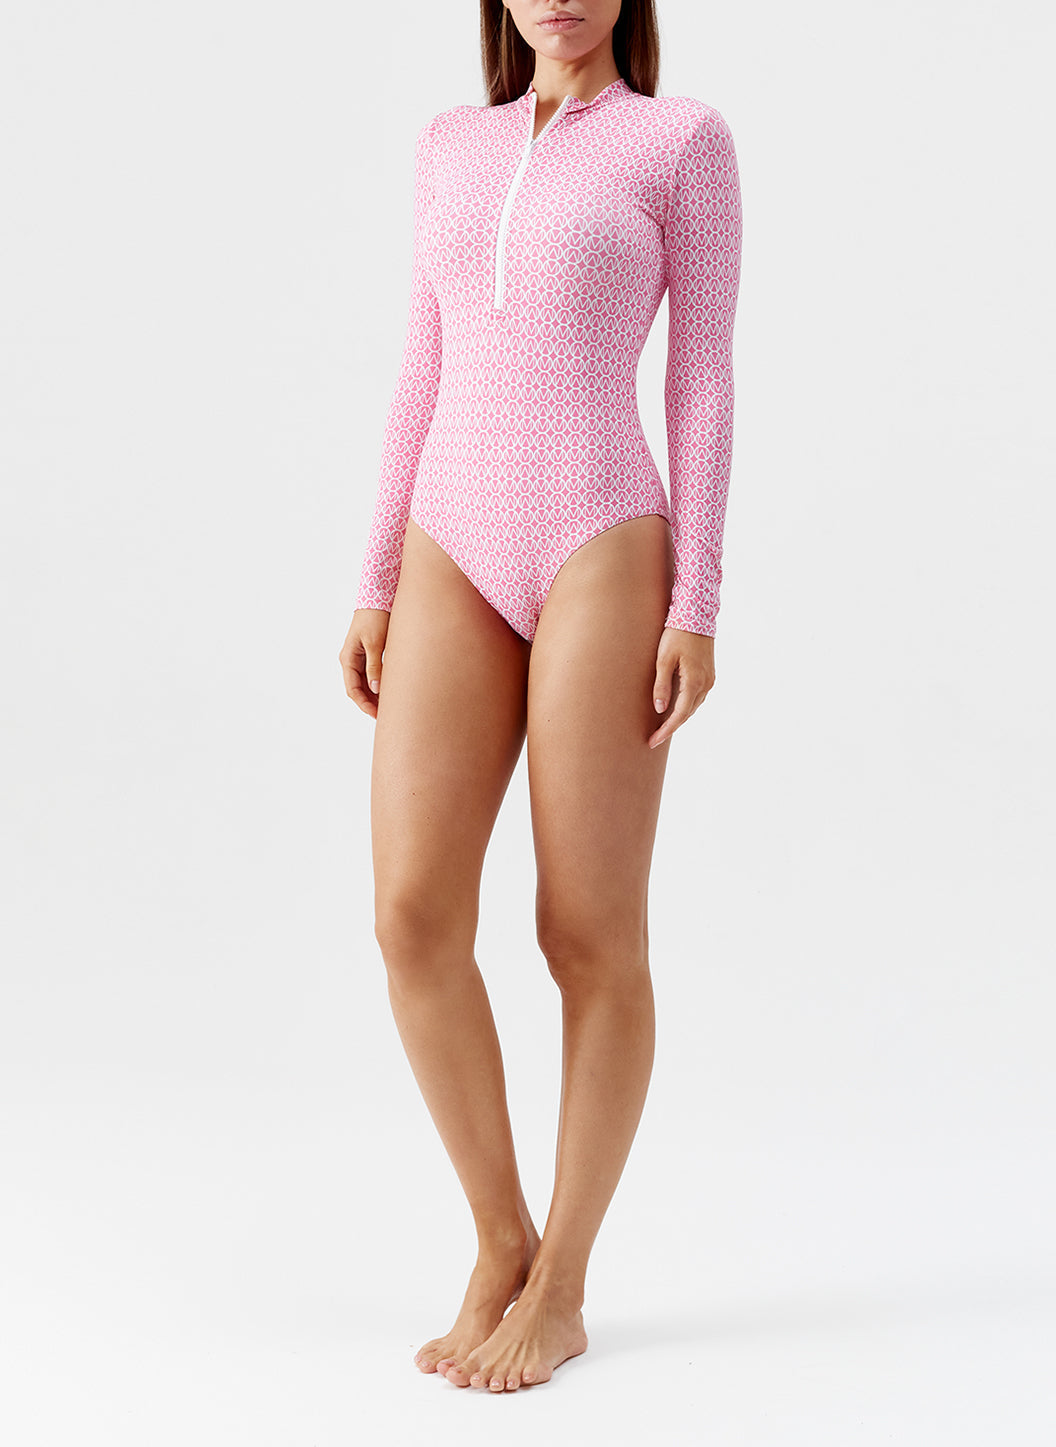 aruba_geopink_swimsuit_model_2024_F